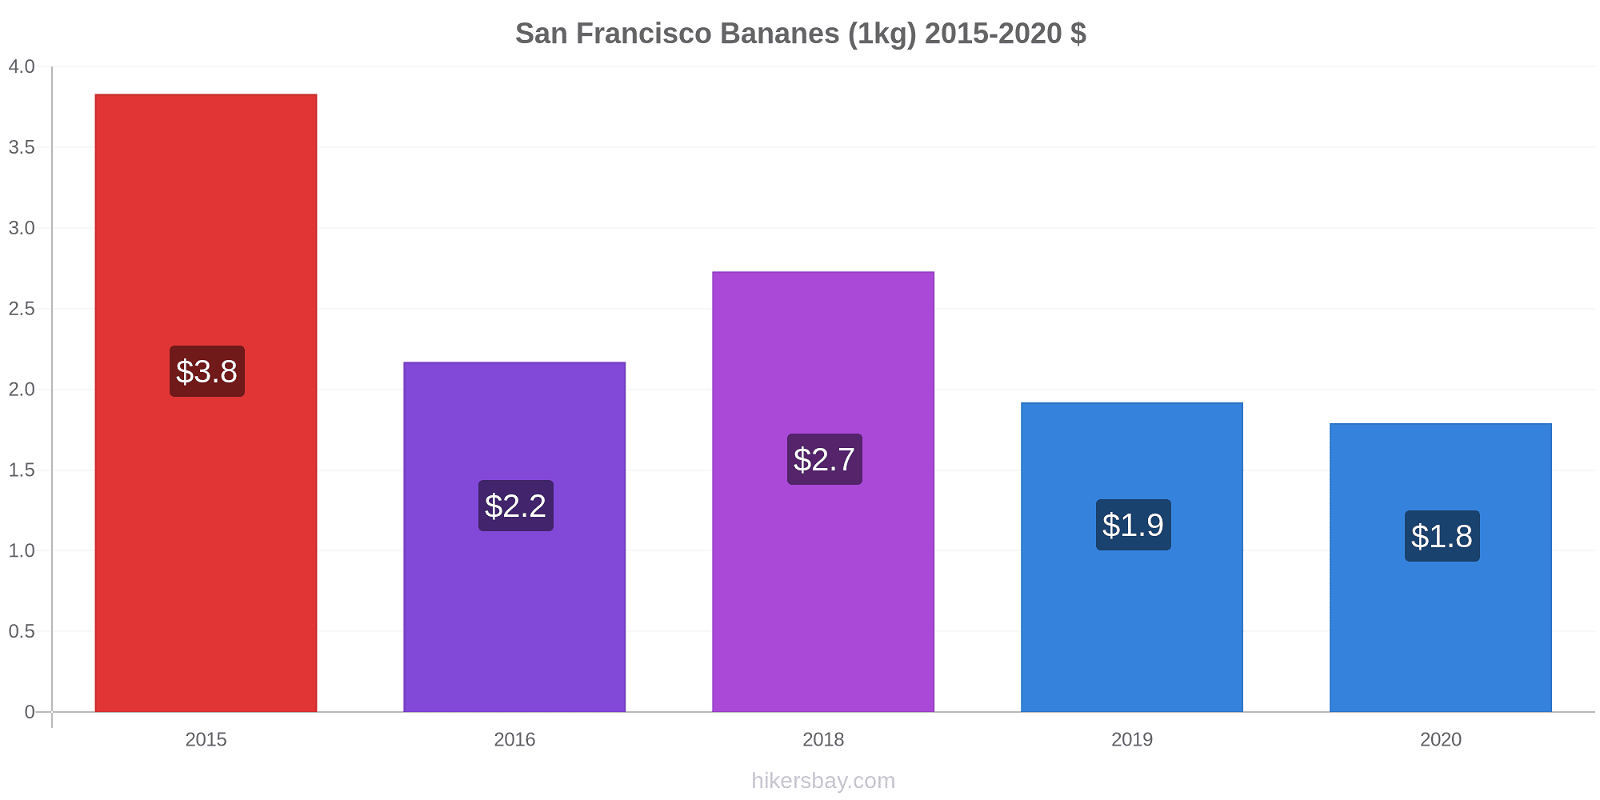 San Francisco changements de prix Bananes (1kg) hikersbay.com